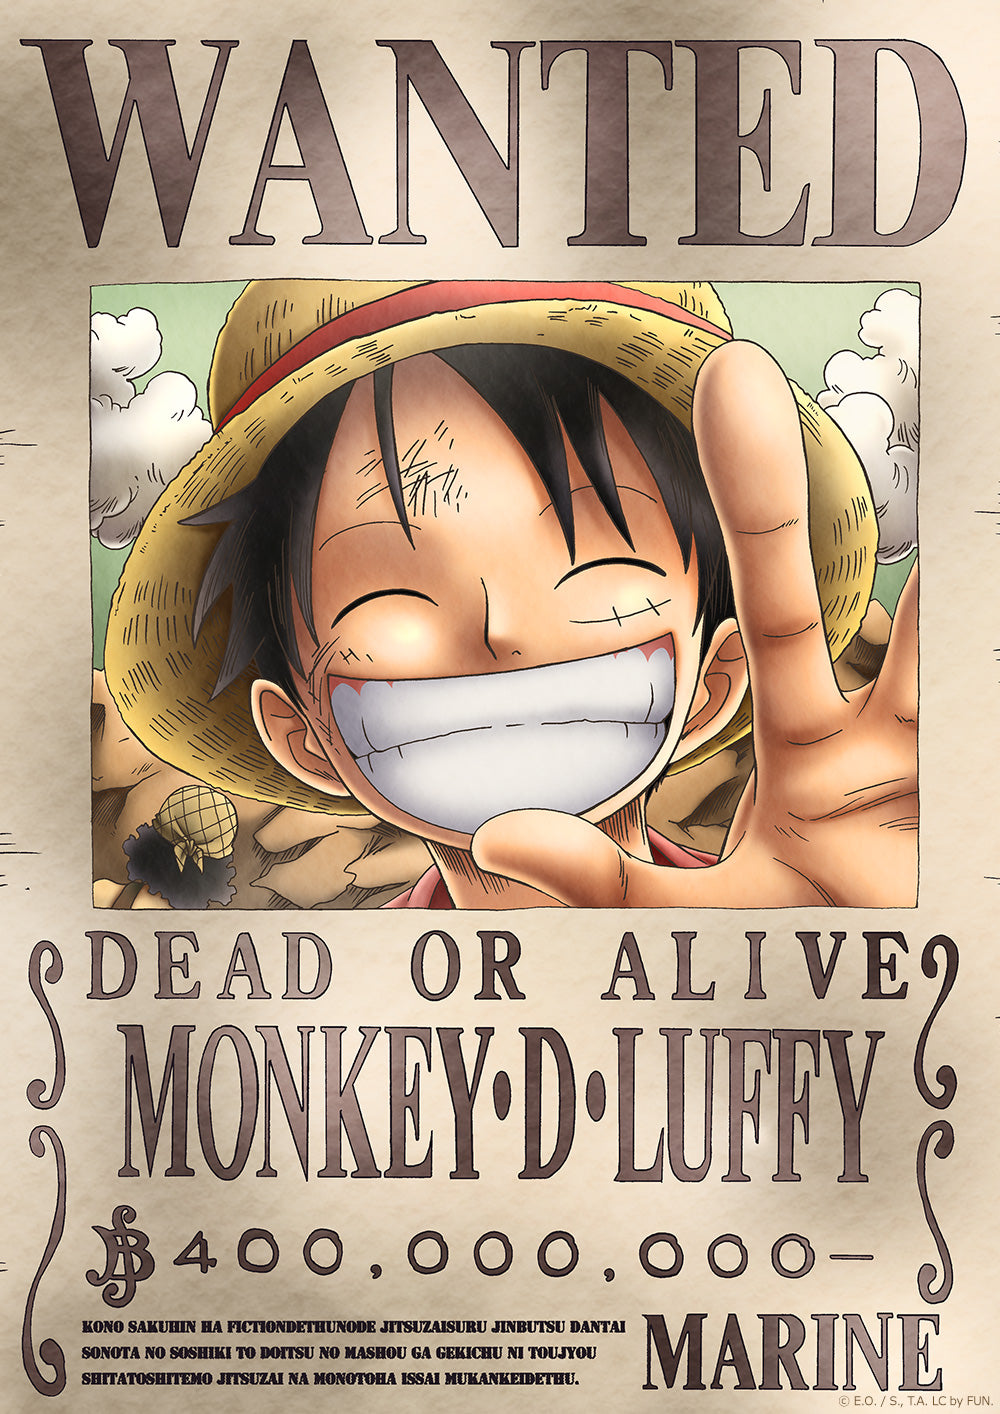 <transcy>SE BUSCA UNA PIEZA: Póster de Dead or Alive: Luffy (con licencia oficial)</transcy>